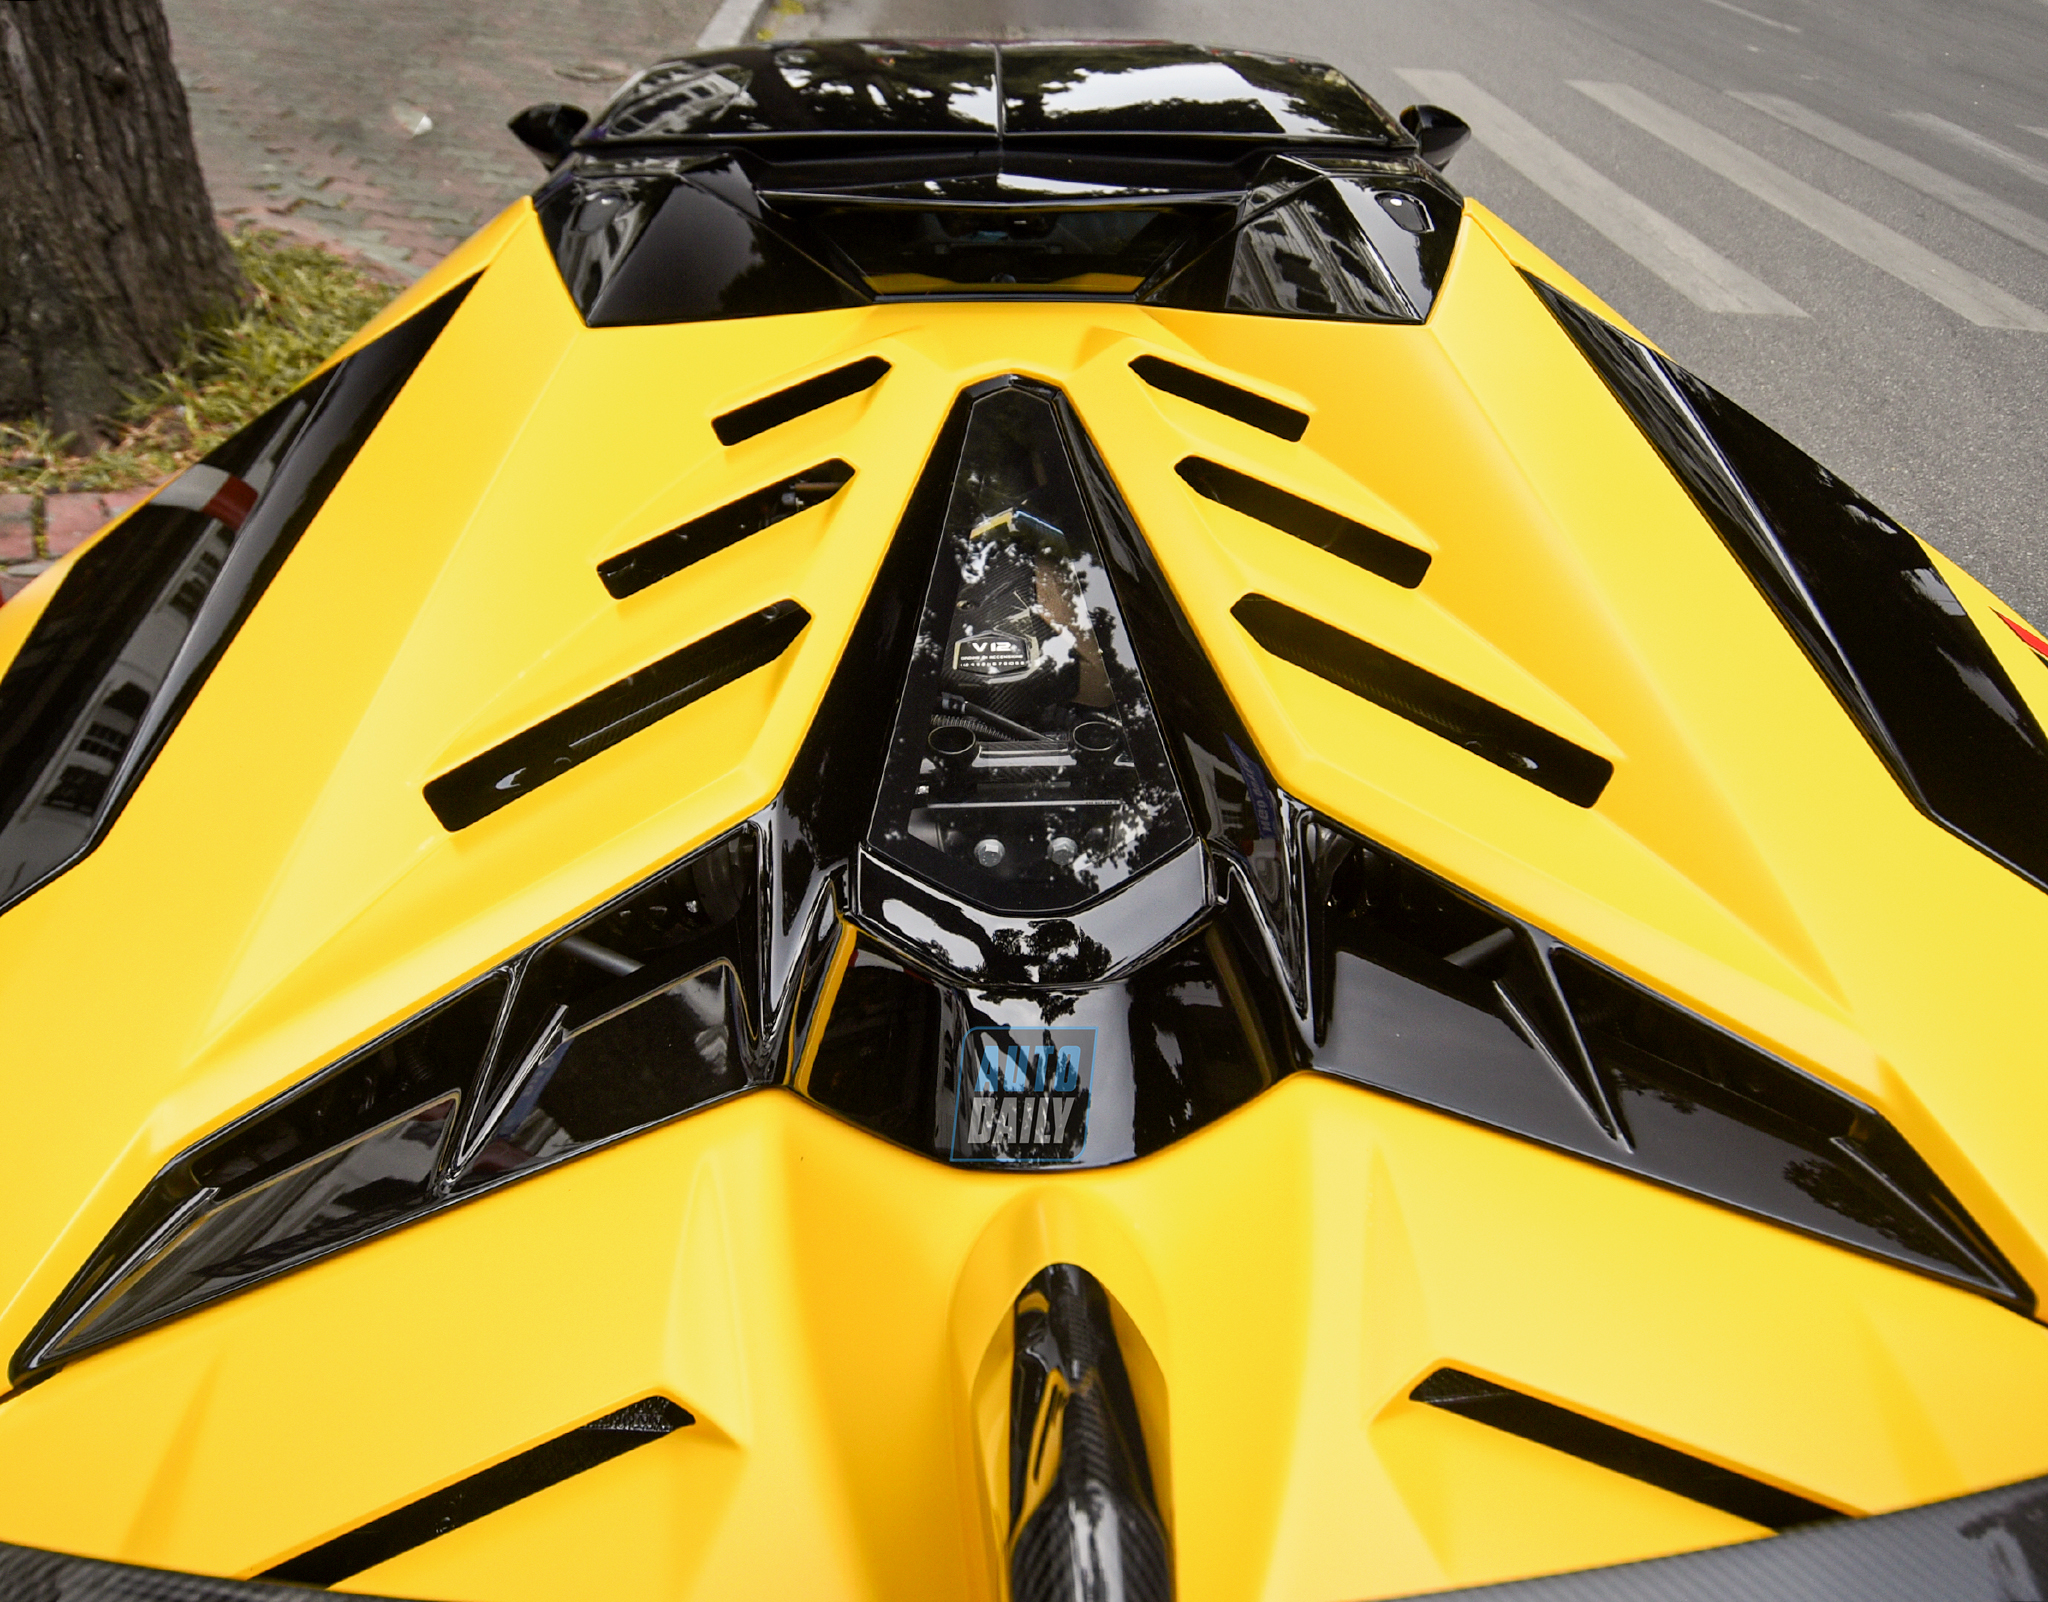 Lamborghini Aventador SVJ Roadster là biểu tượng của sự đỉnh cao về công nghệ và thiết kế xe hơi. Chiếc xe này được sản xuất giới hạn và chỉ dành cho những ai thật sự sành điệu và đam mê xe hơi. Hãy xem qua hình ảnh Lamborghini Aventador SVJ Roadster và bạn sẽ cảm nhận được sự tinh tế và độc đáo của chiếc xe này.